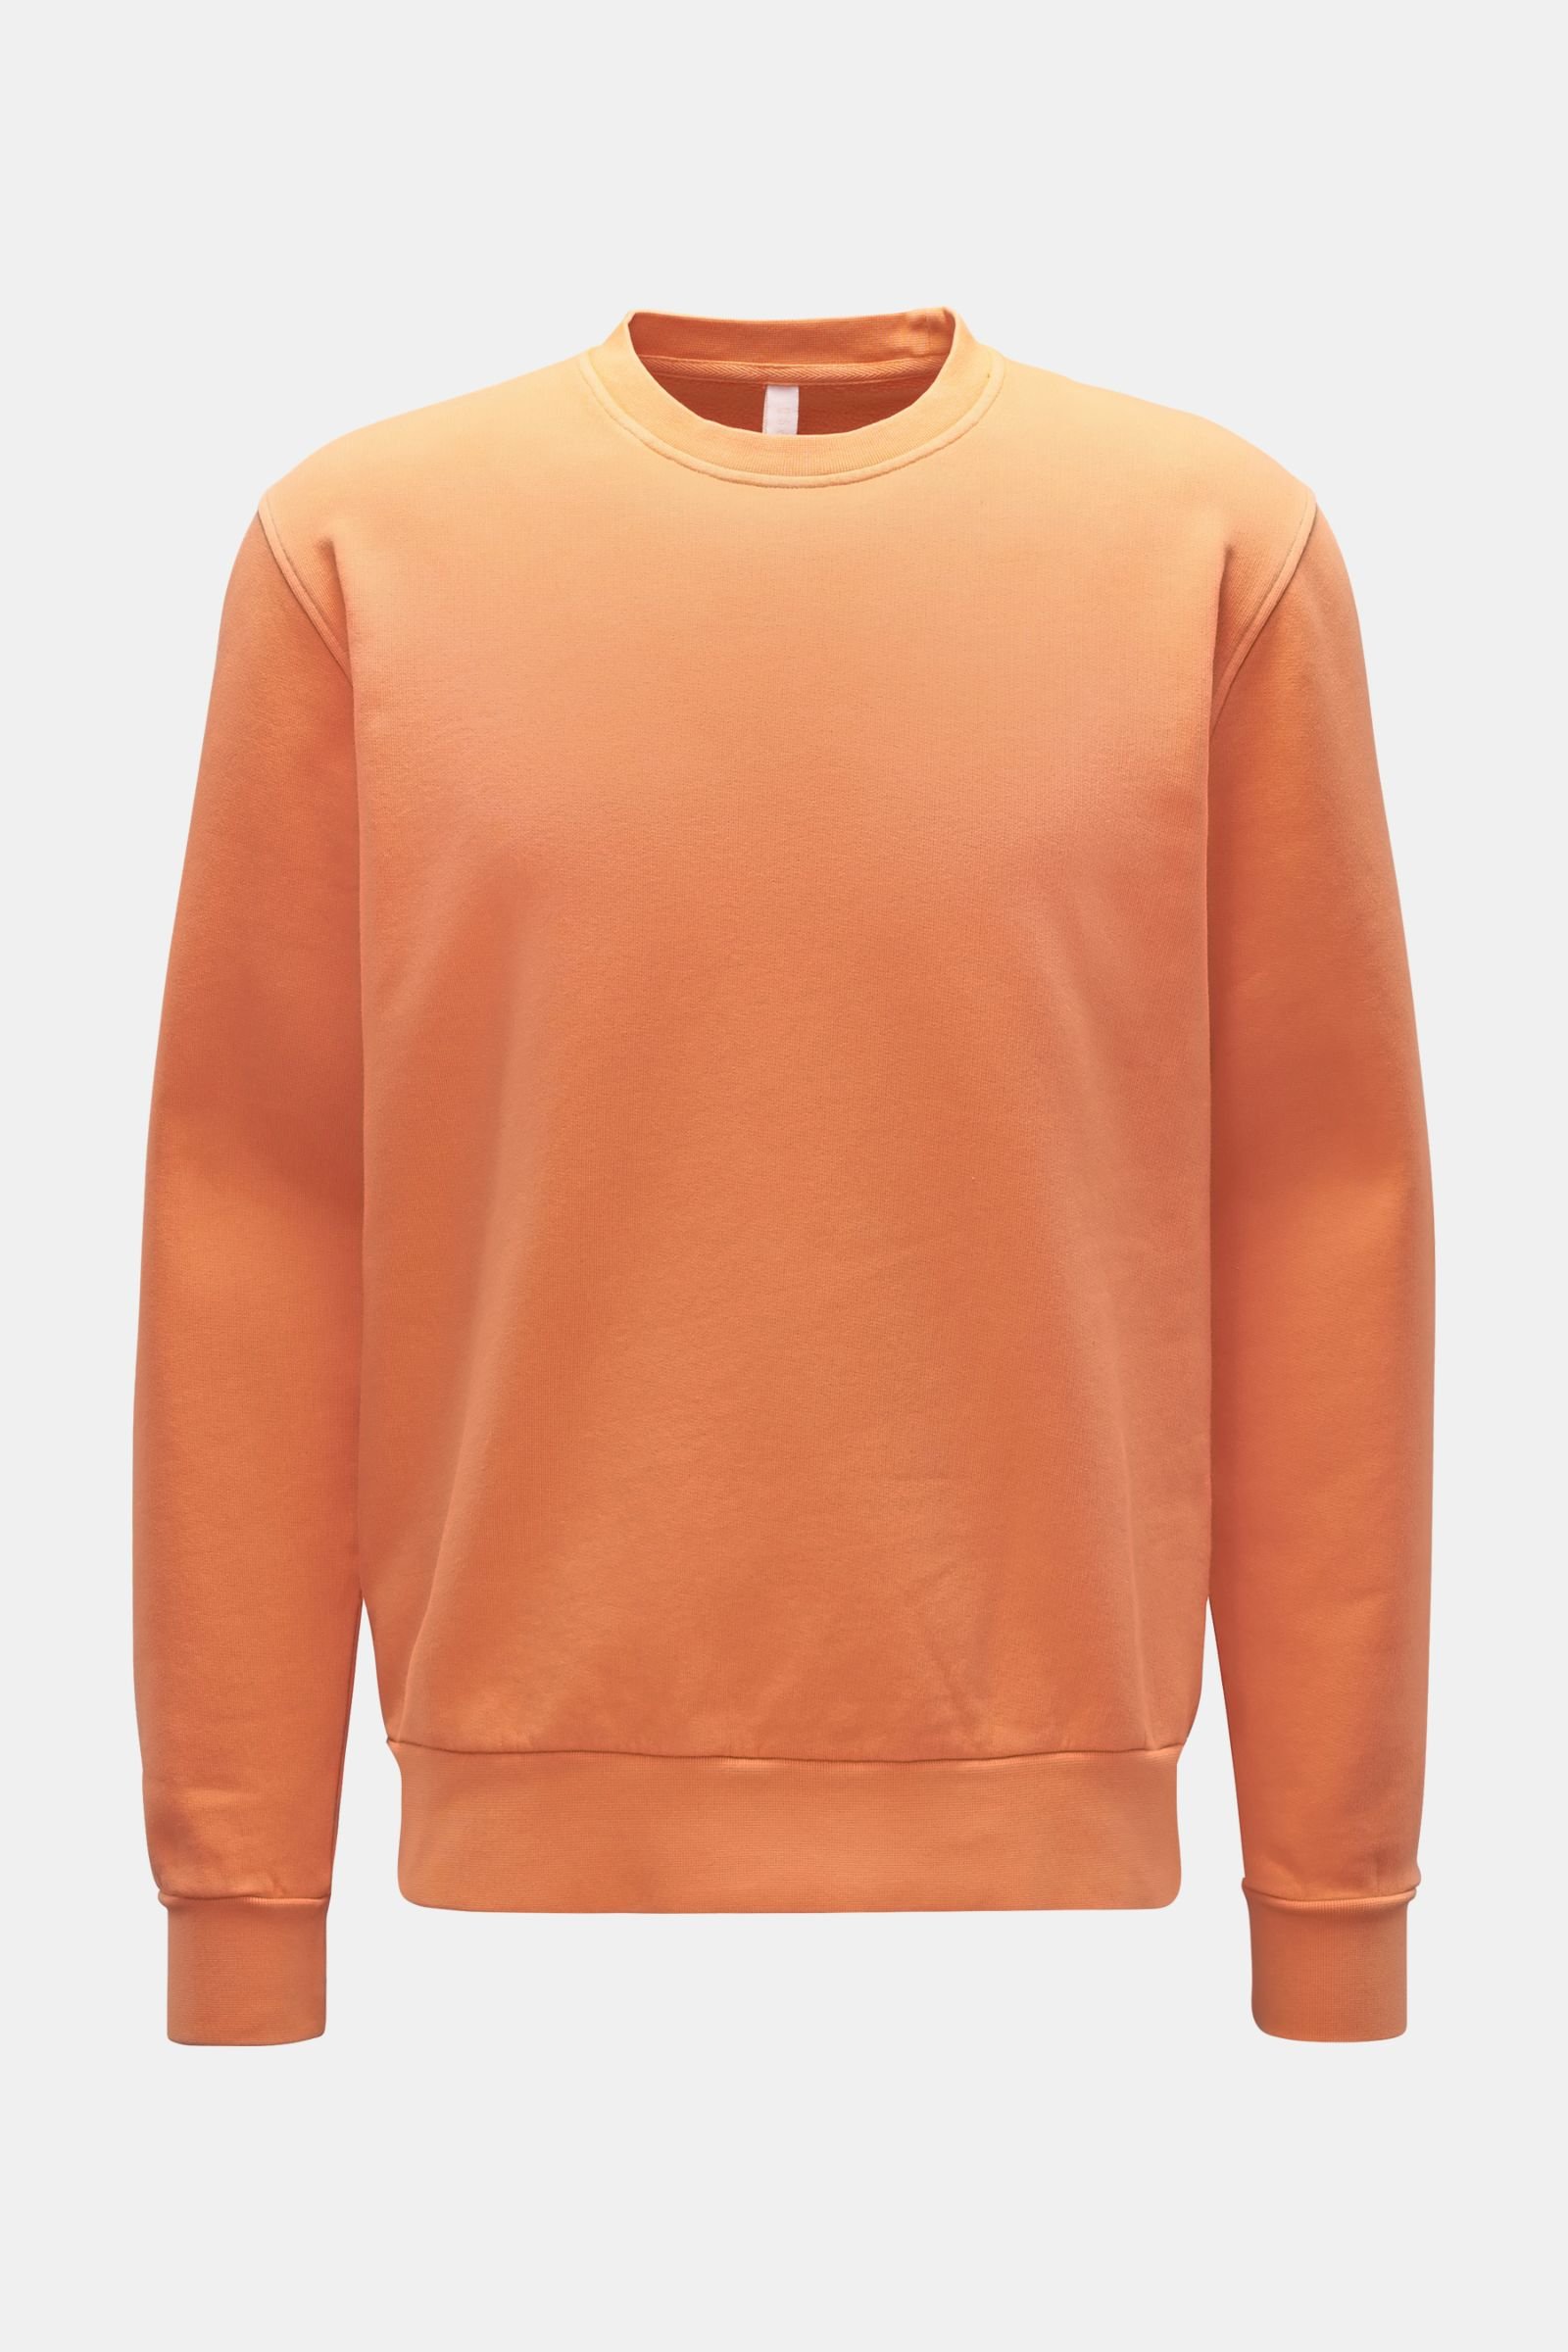 Rundhals-Sweatshirt 'AF Crew Neck' orange